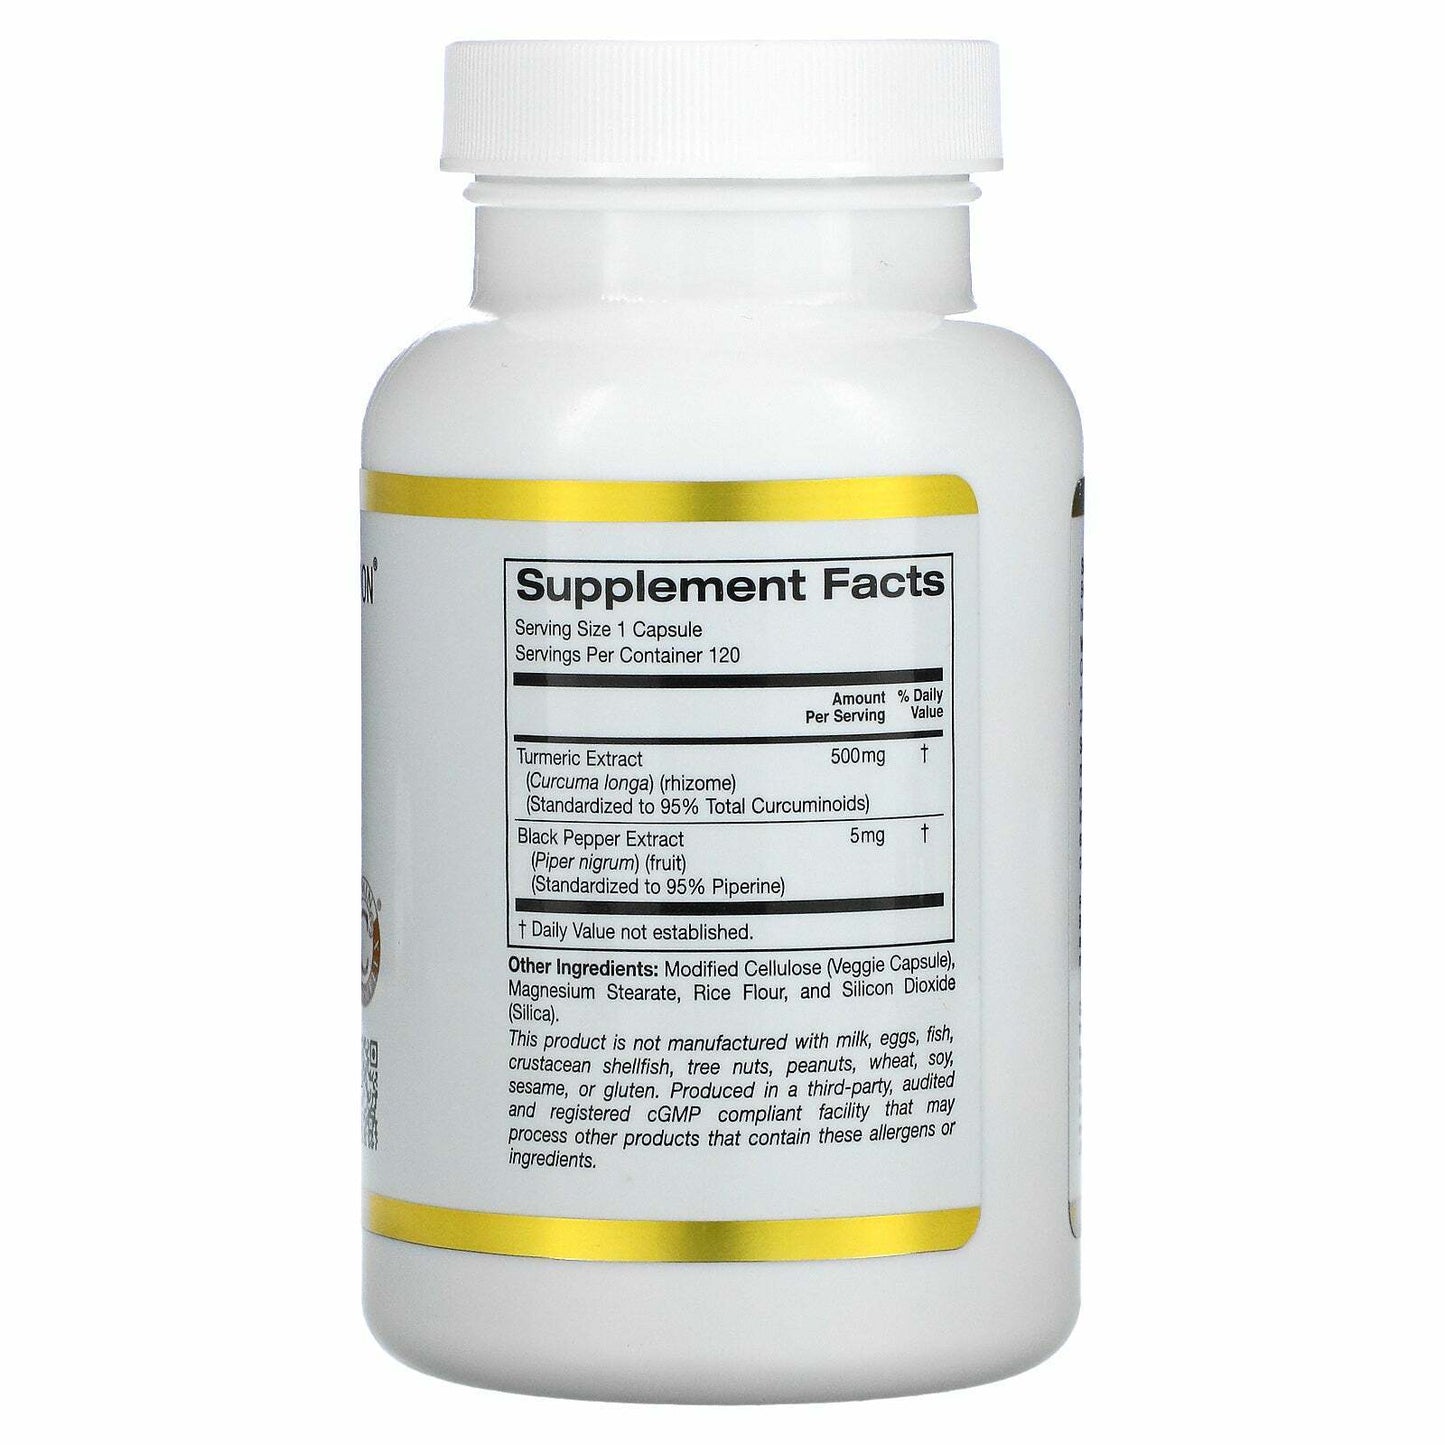 California Gold Nutrition Curcumin C3 Complex BioPerine 500mg 120 Veg Caps NEW